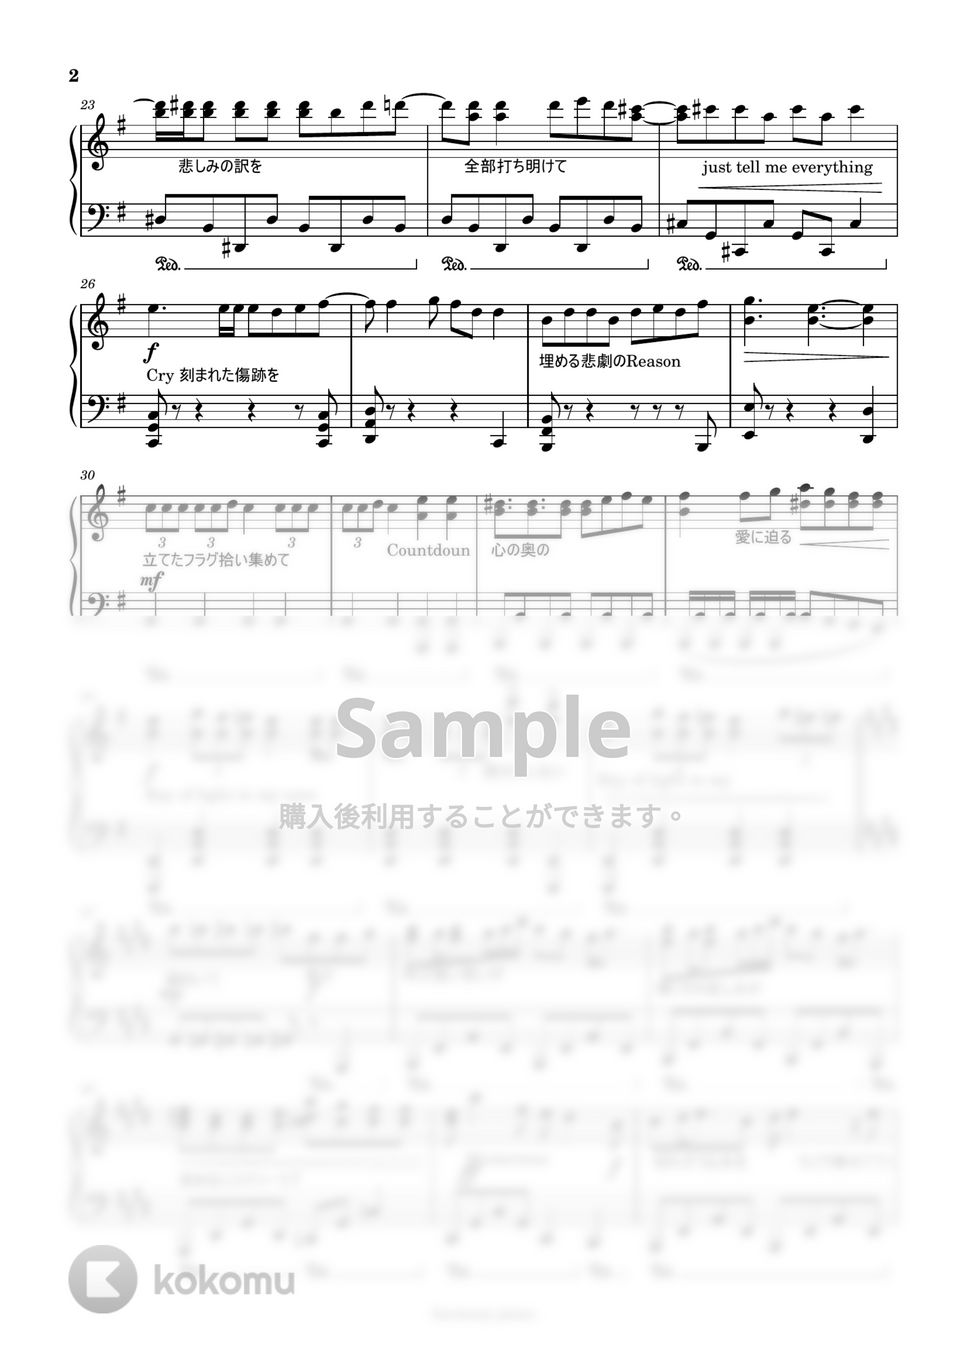 なにわ男子 - The Answer「金田一少年の事件簿」主題歌 (歌詞つき) by harmony piano